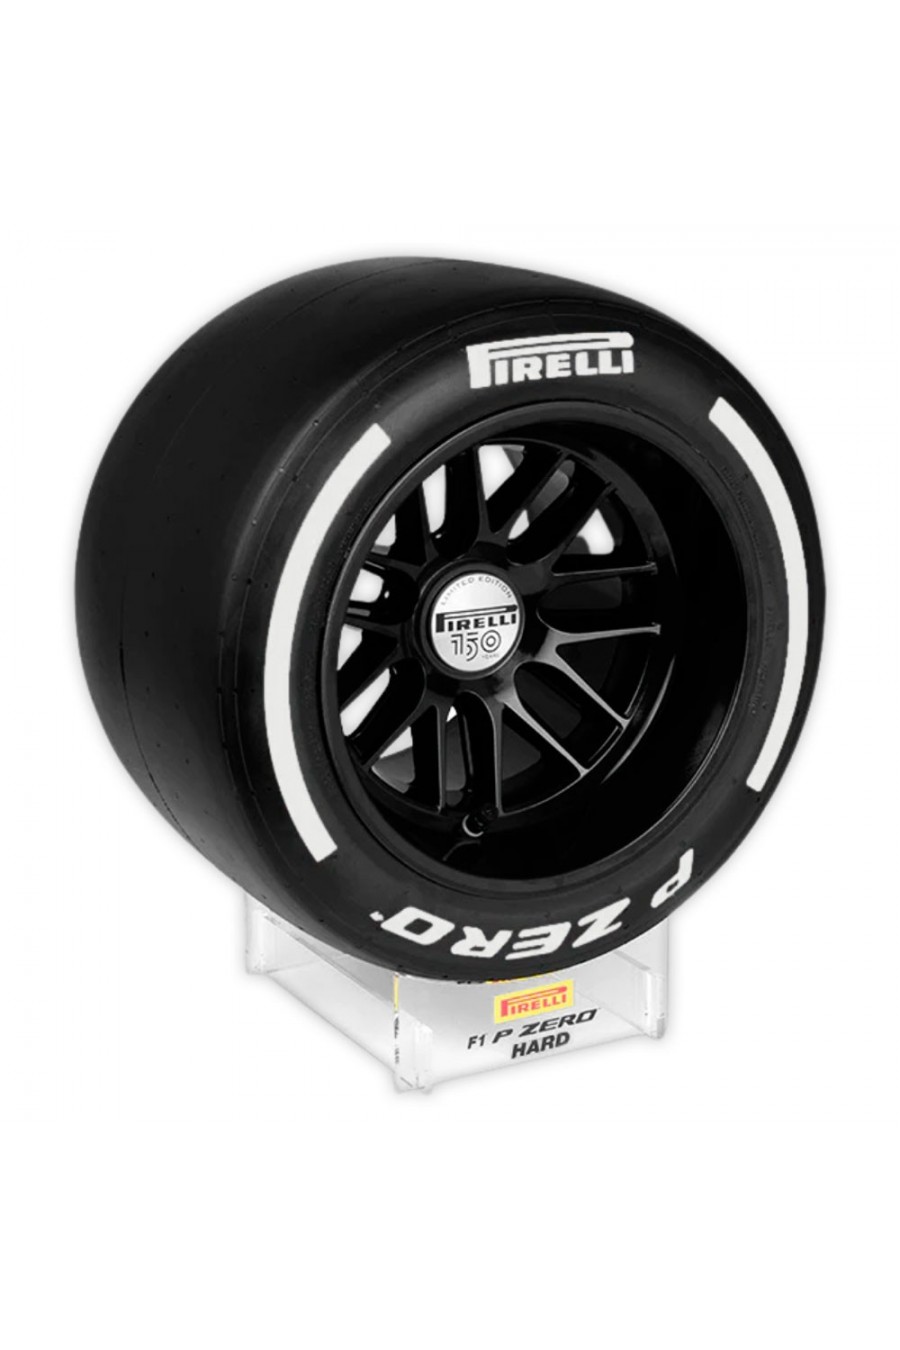 Miniatur 1:2 Reifen Pirelli F1 Hard 2022